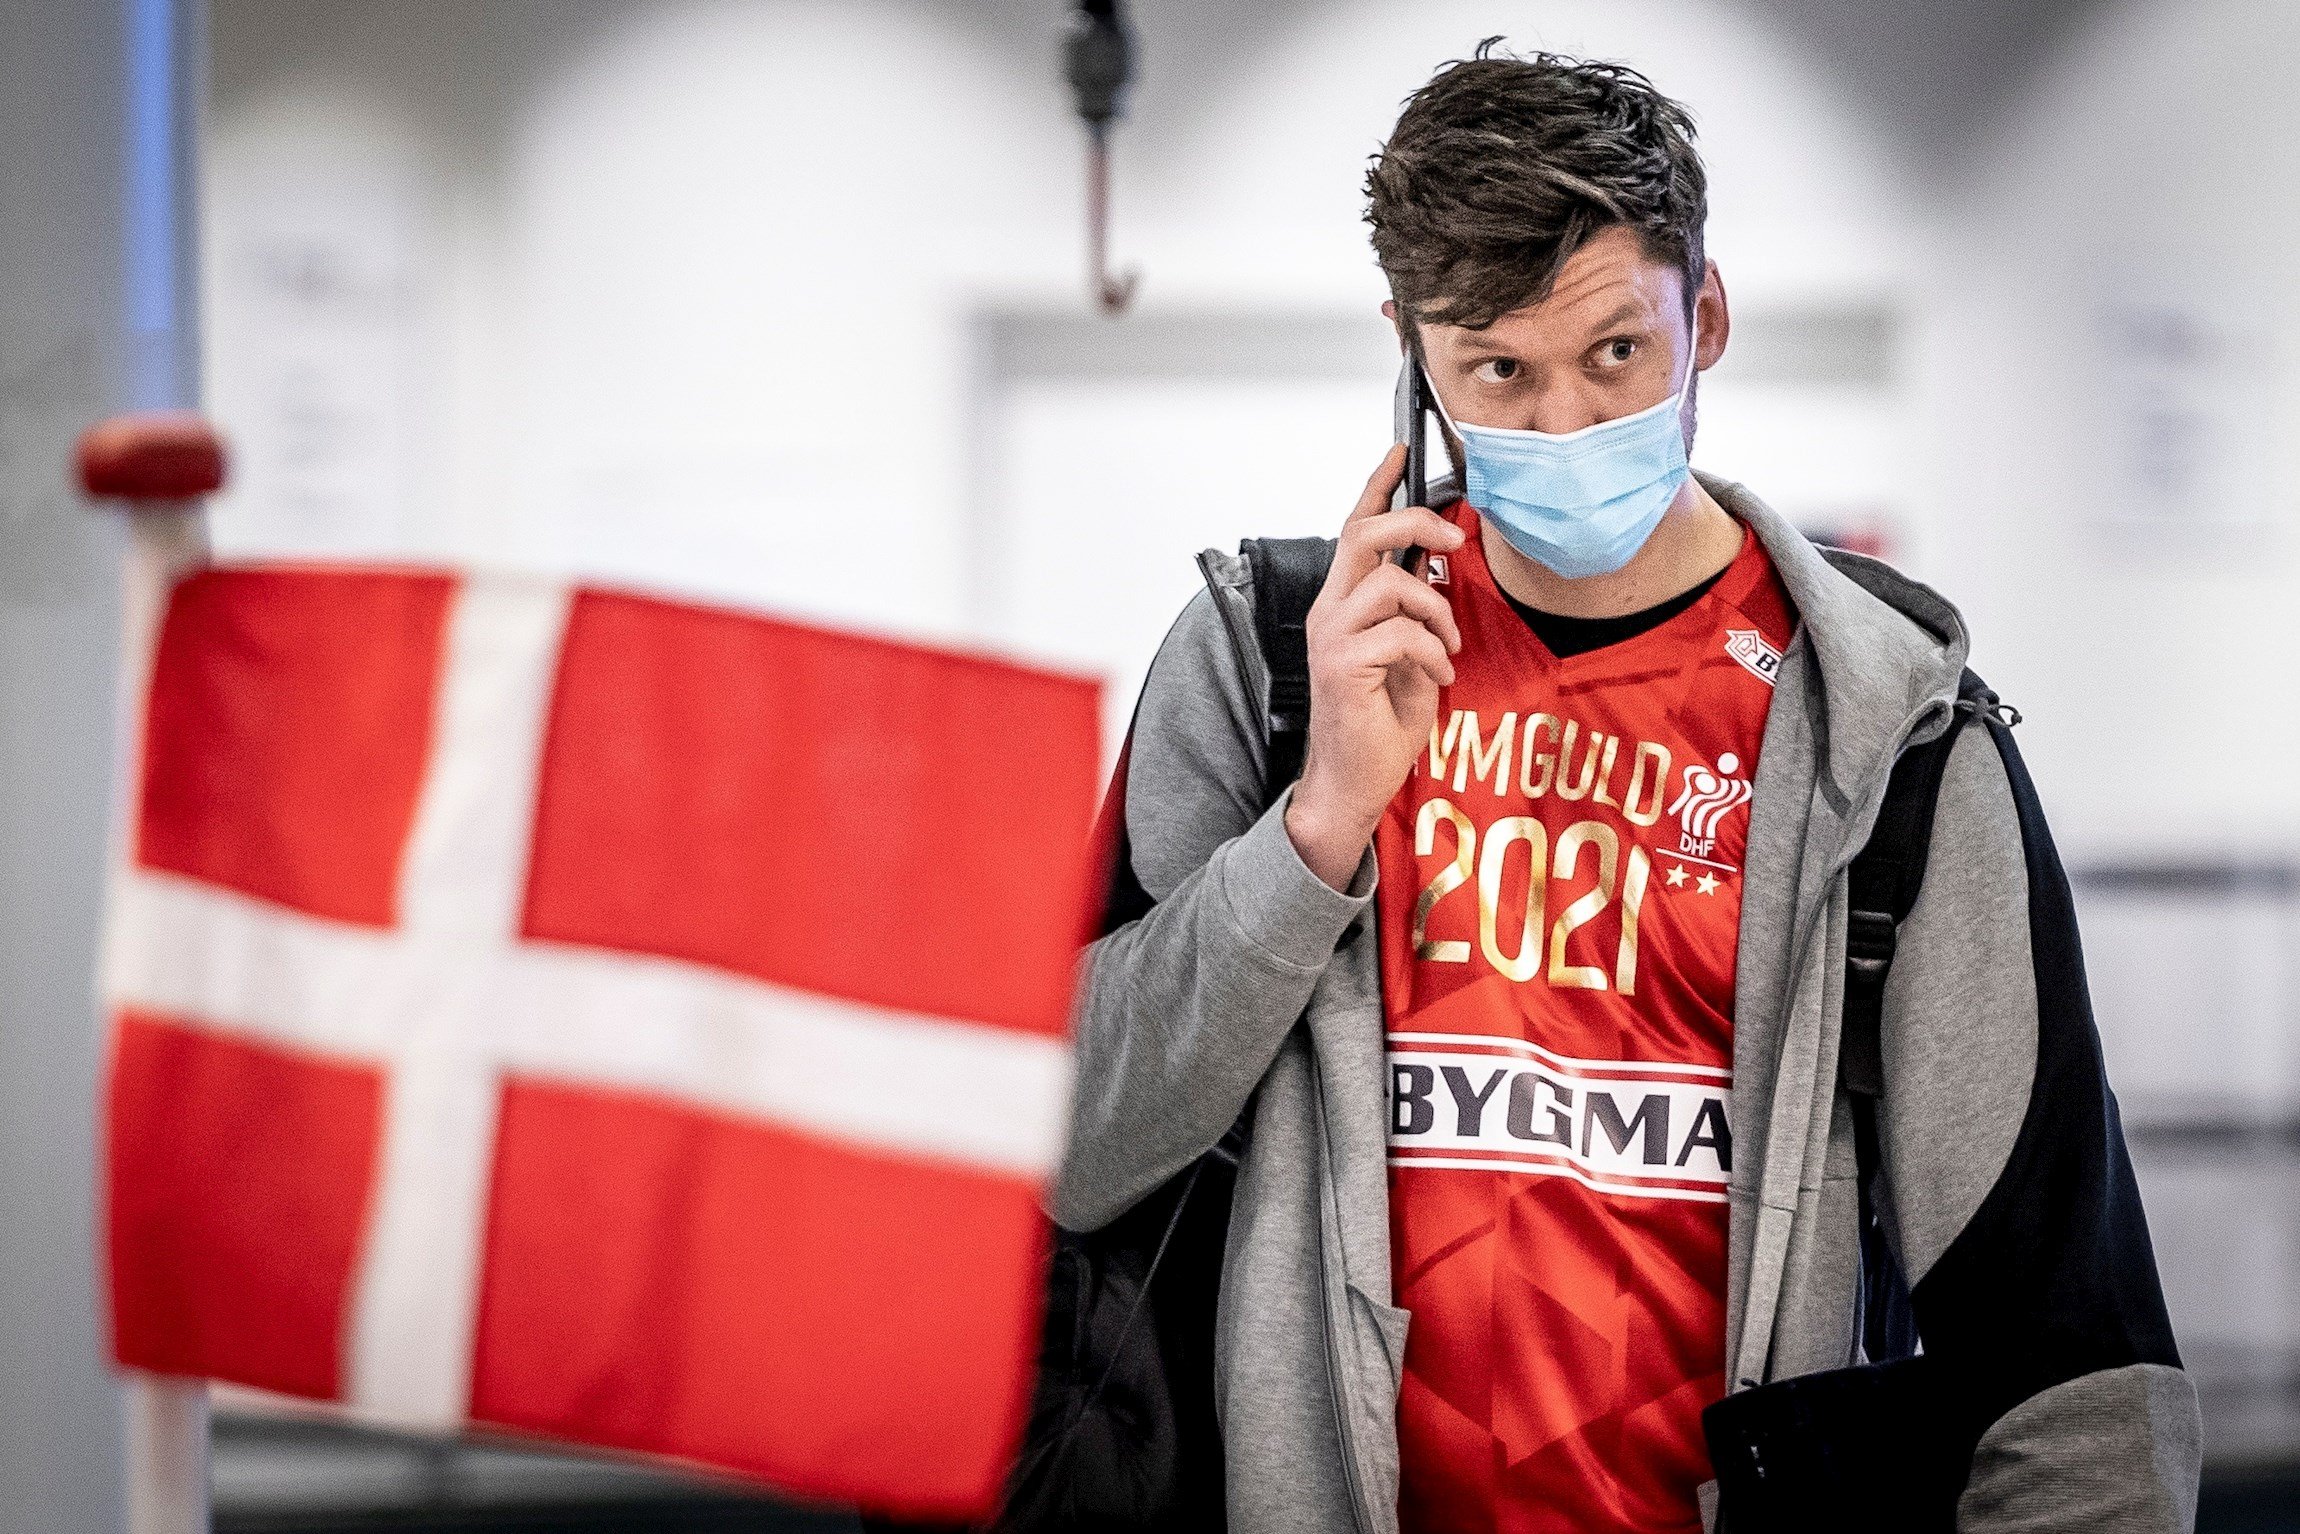 Dinamarca proporcionarà un passaport digital pels vacunats de Covid